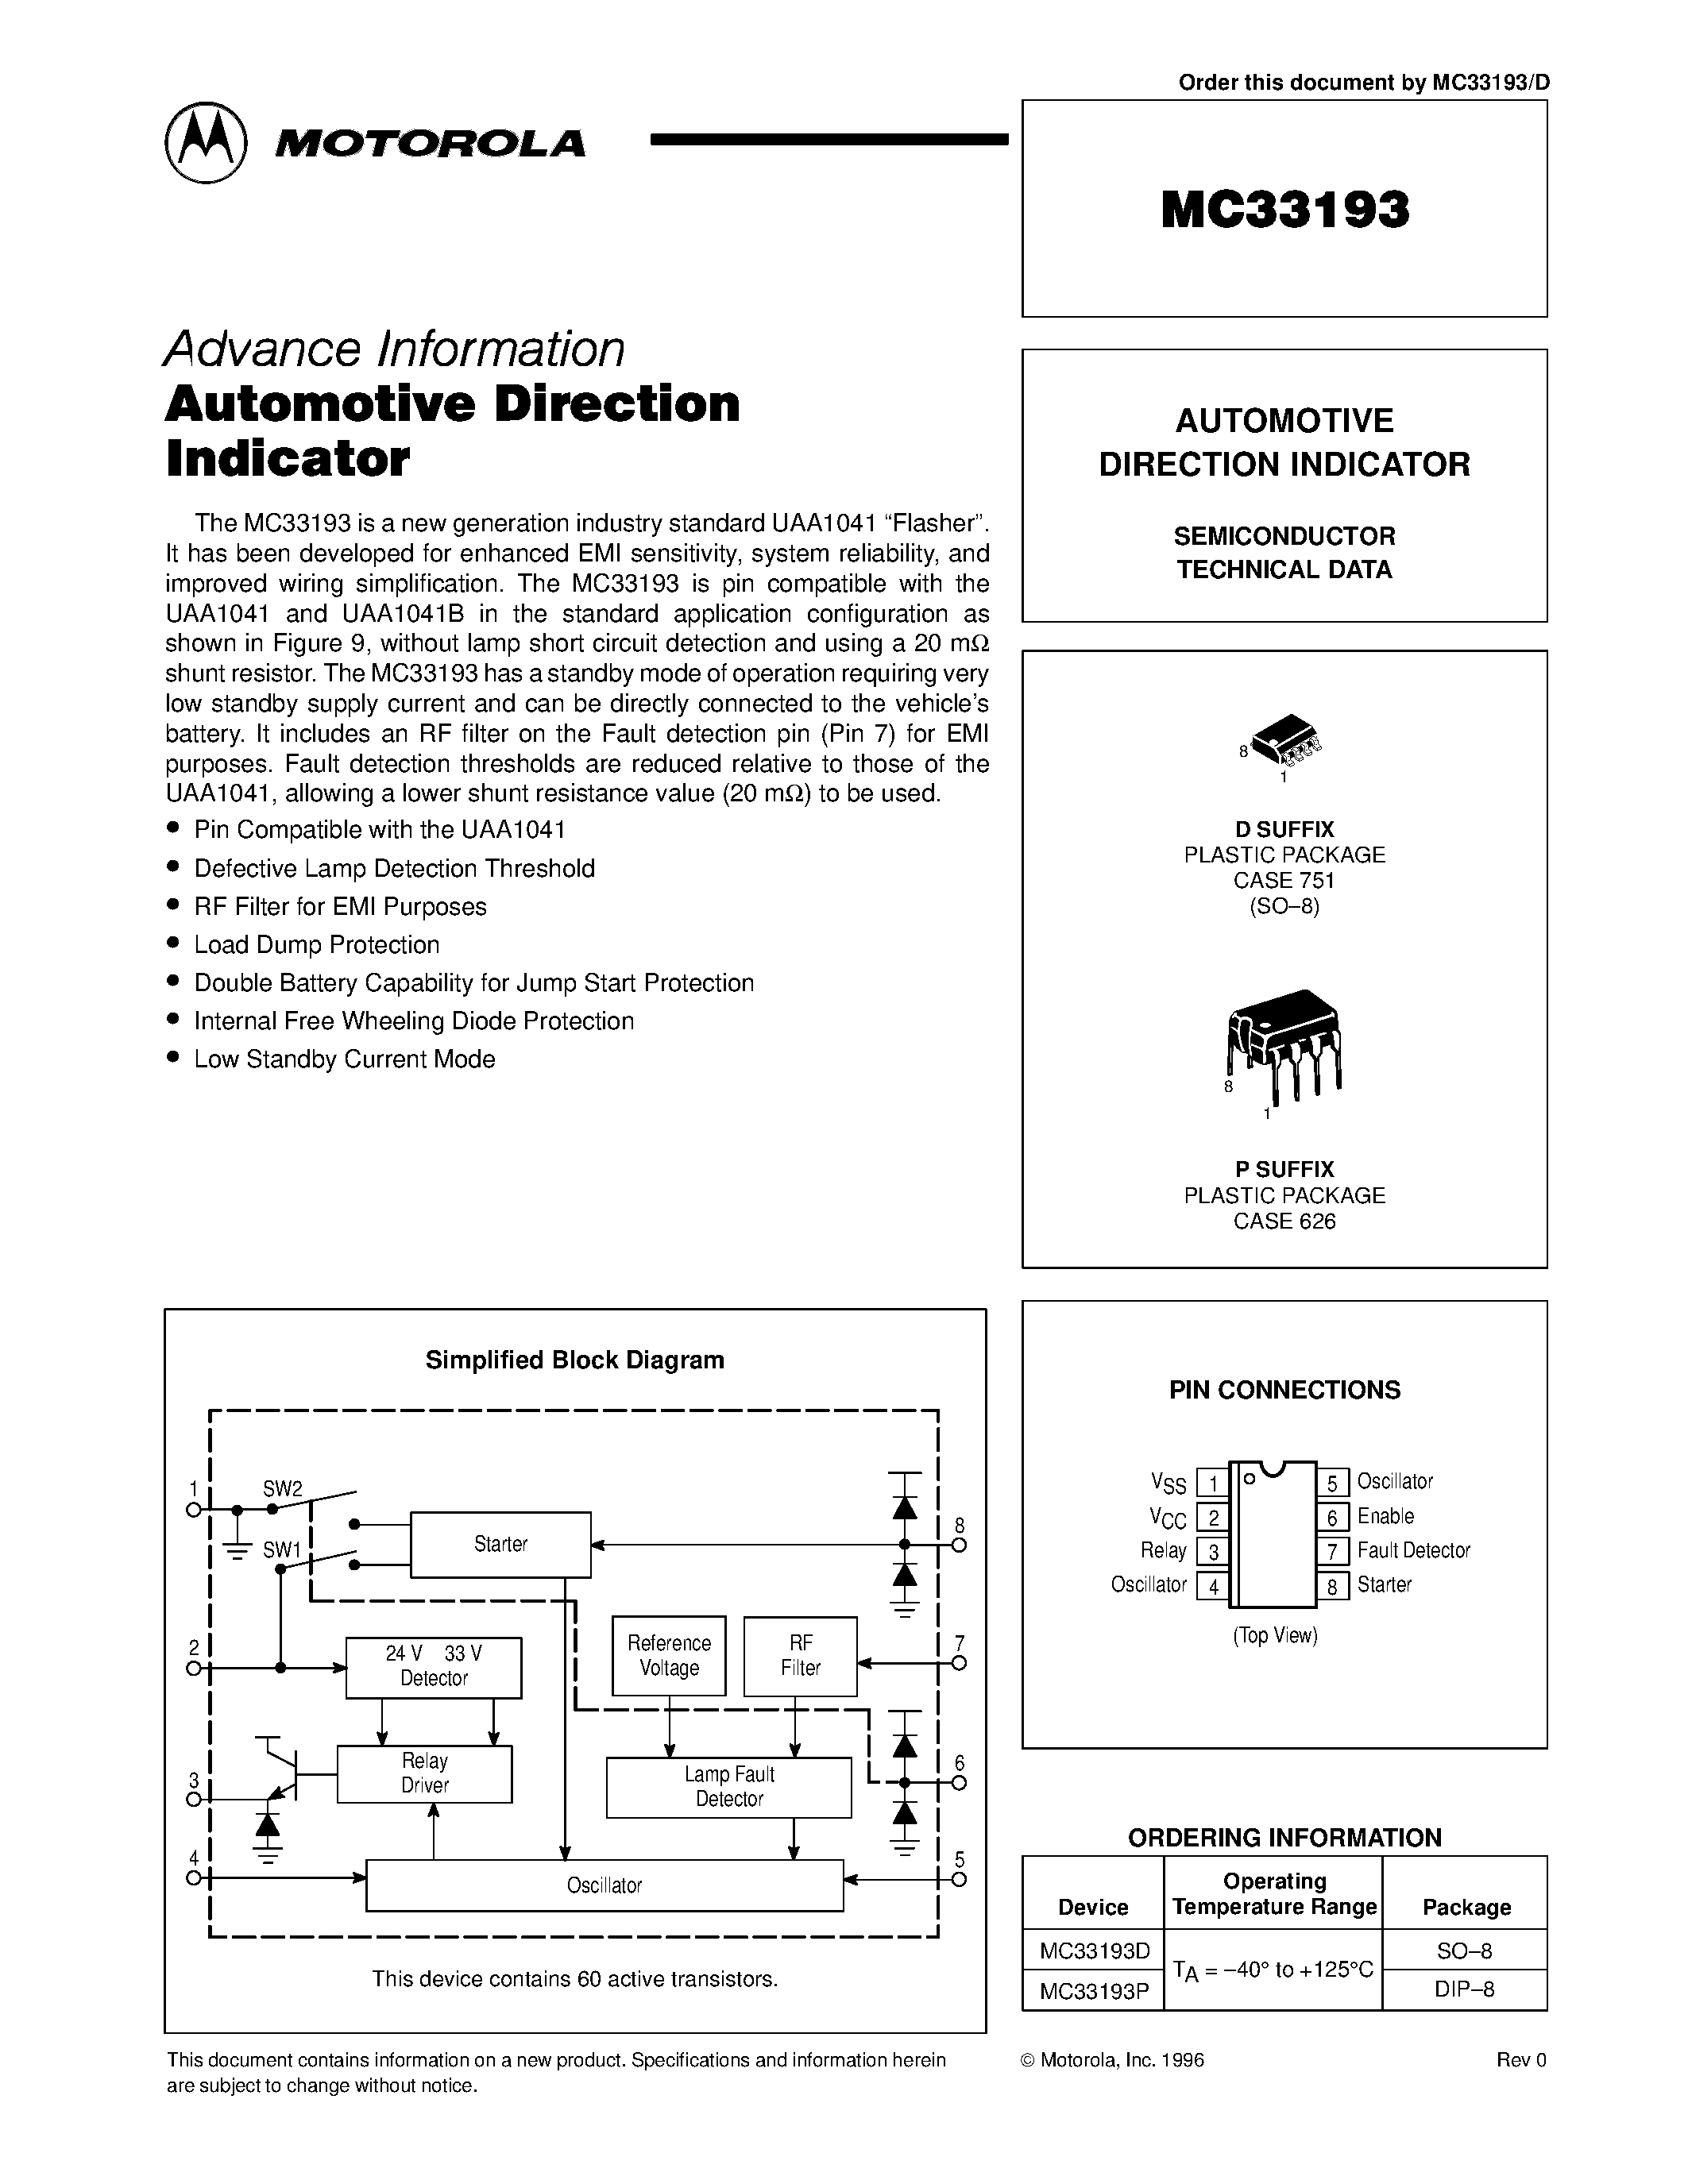 Datasheet MC33193 - AUTOMOTIVE DIRECTION INDICATOR page 1